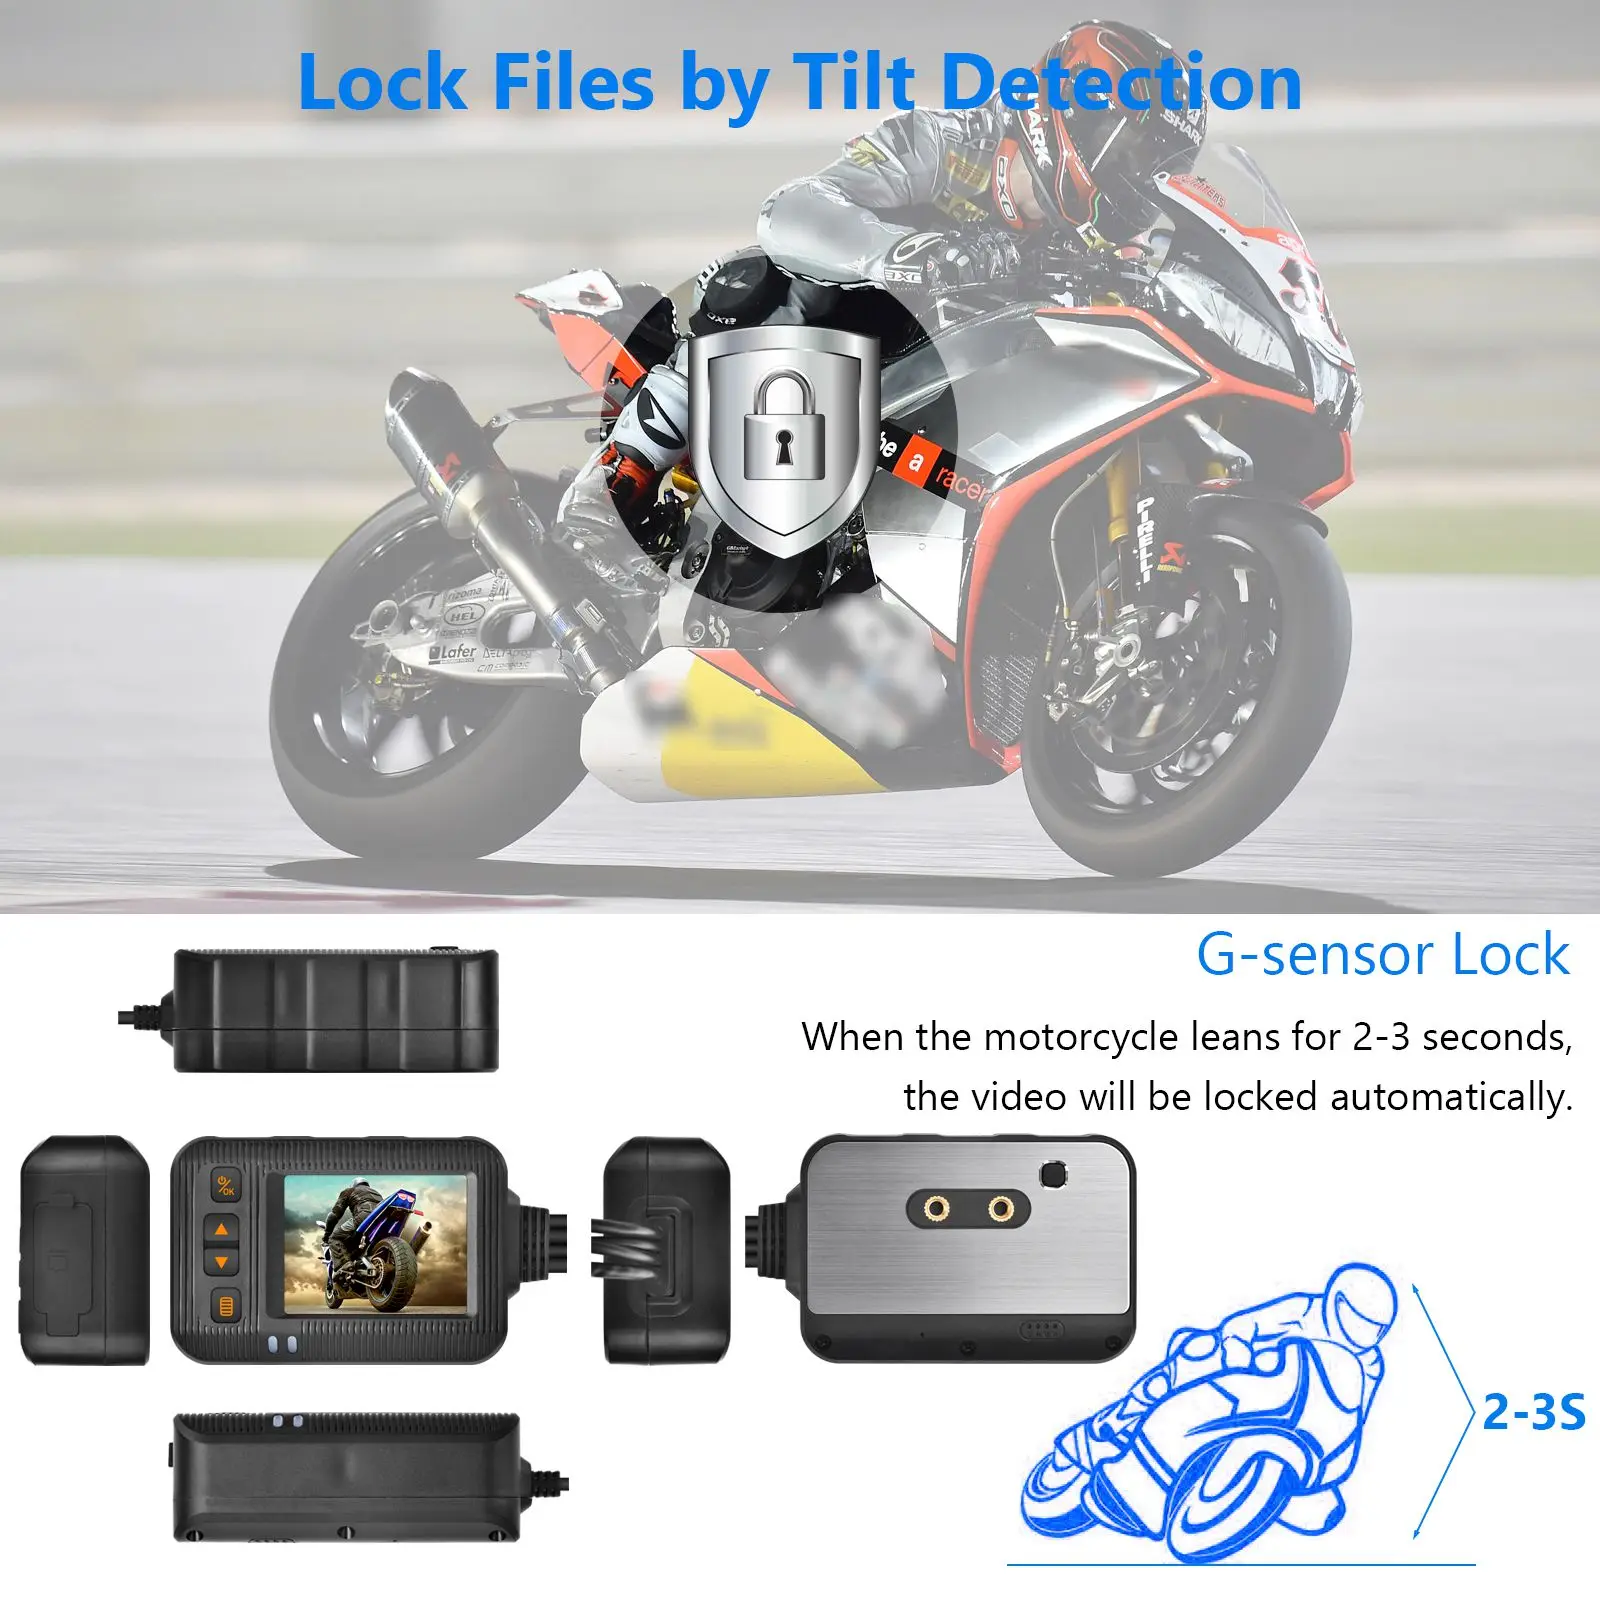 Видеорегистратор для мотоцикла SE20 с двойным объективом для вождения видеокамеры